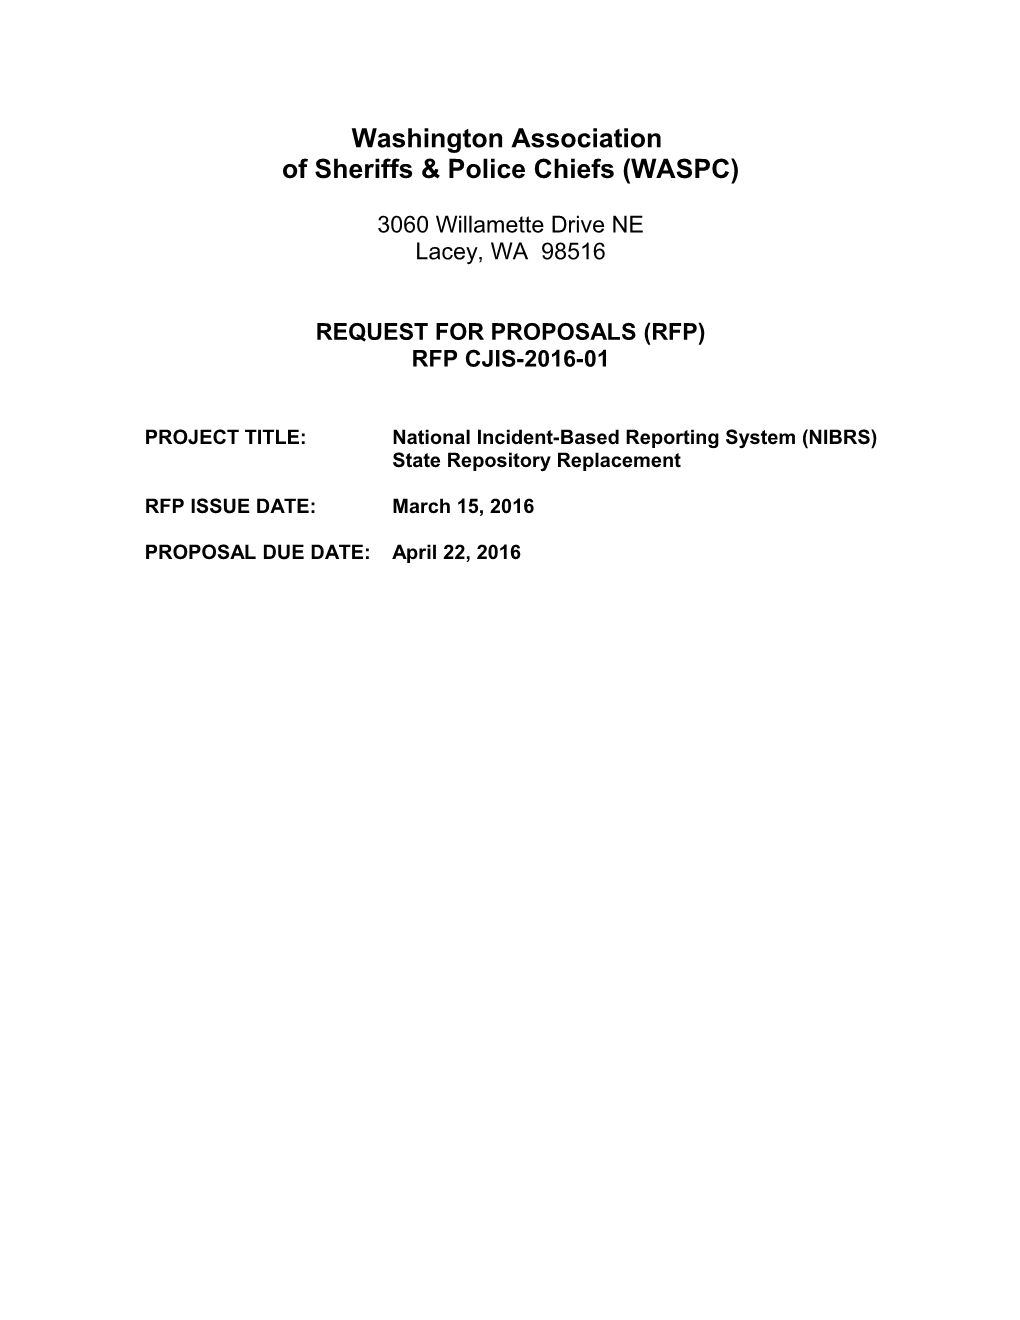 Washington Association of Sheriffs & Police Chiefs (WASPC)